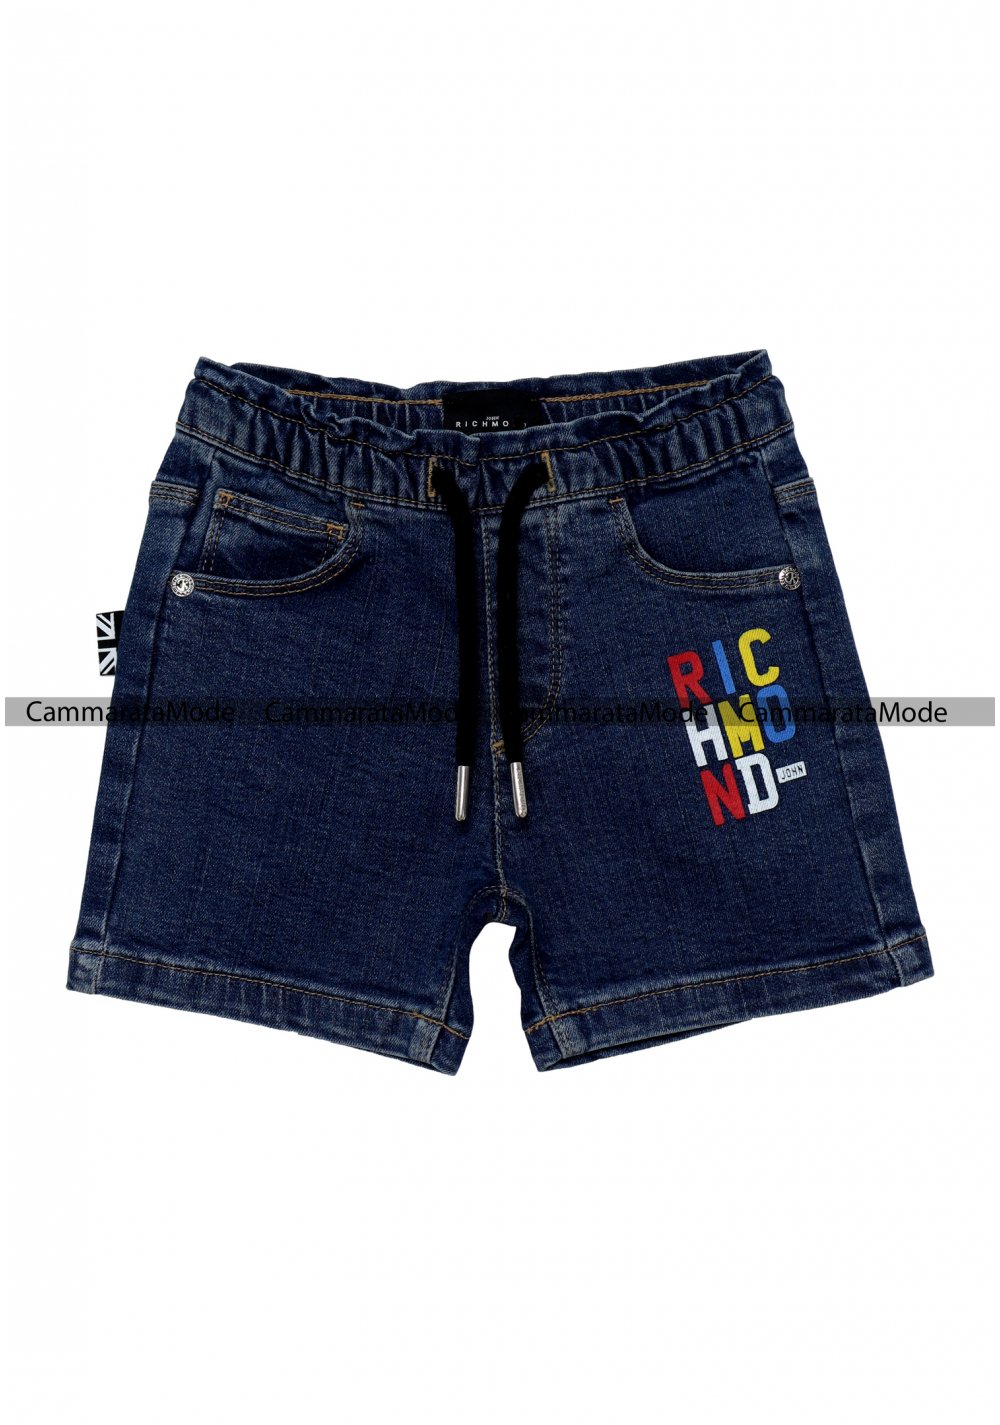 Richmond bambini GUORMA - Shorts di jeans, logo stampa multicolor